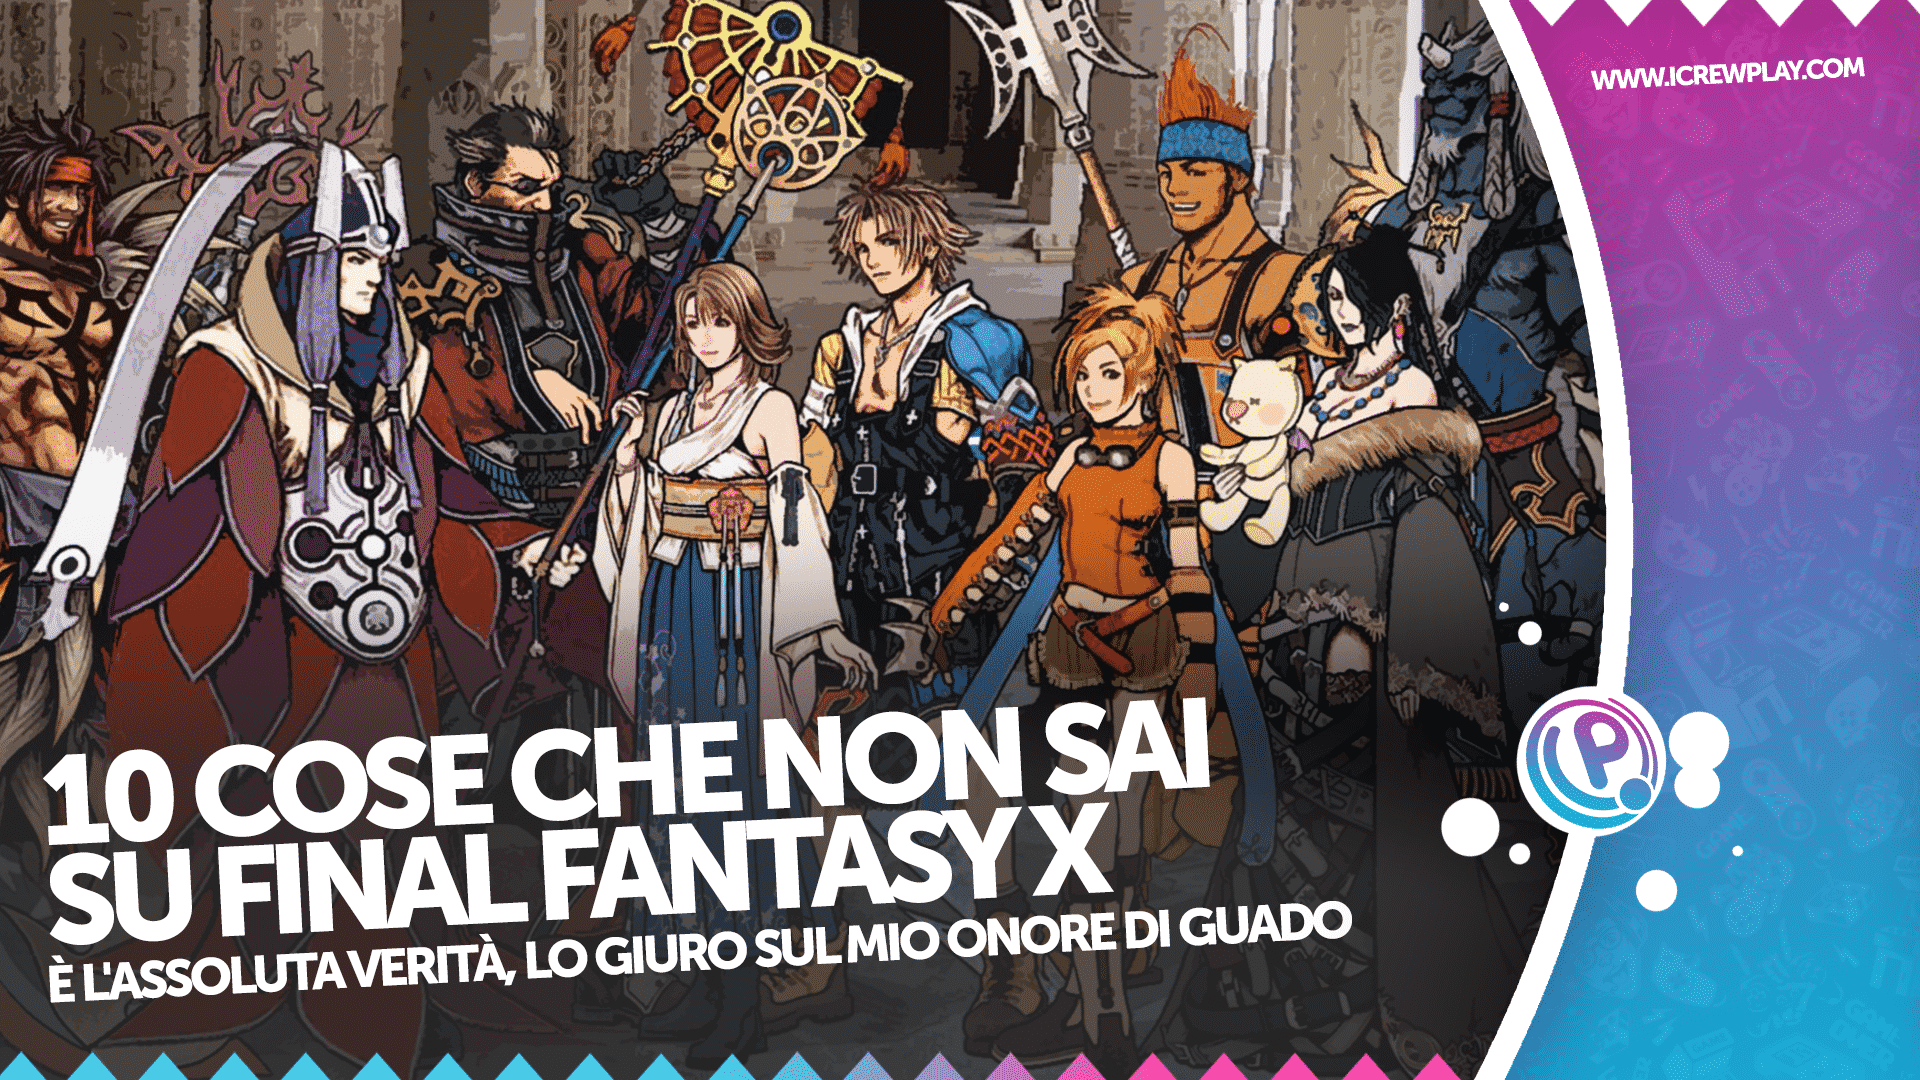 10 cose che non sai su Final Fantasy X 12